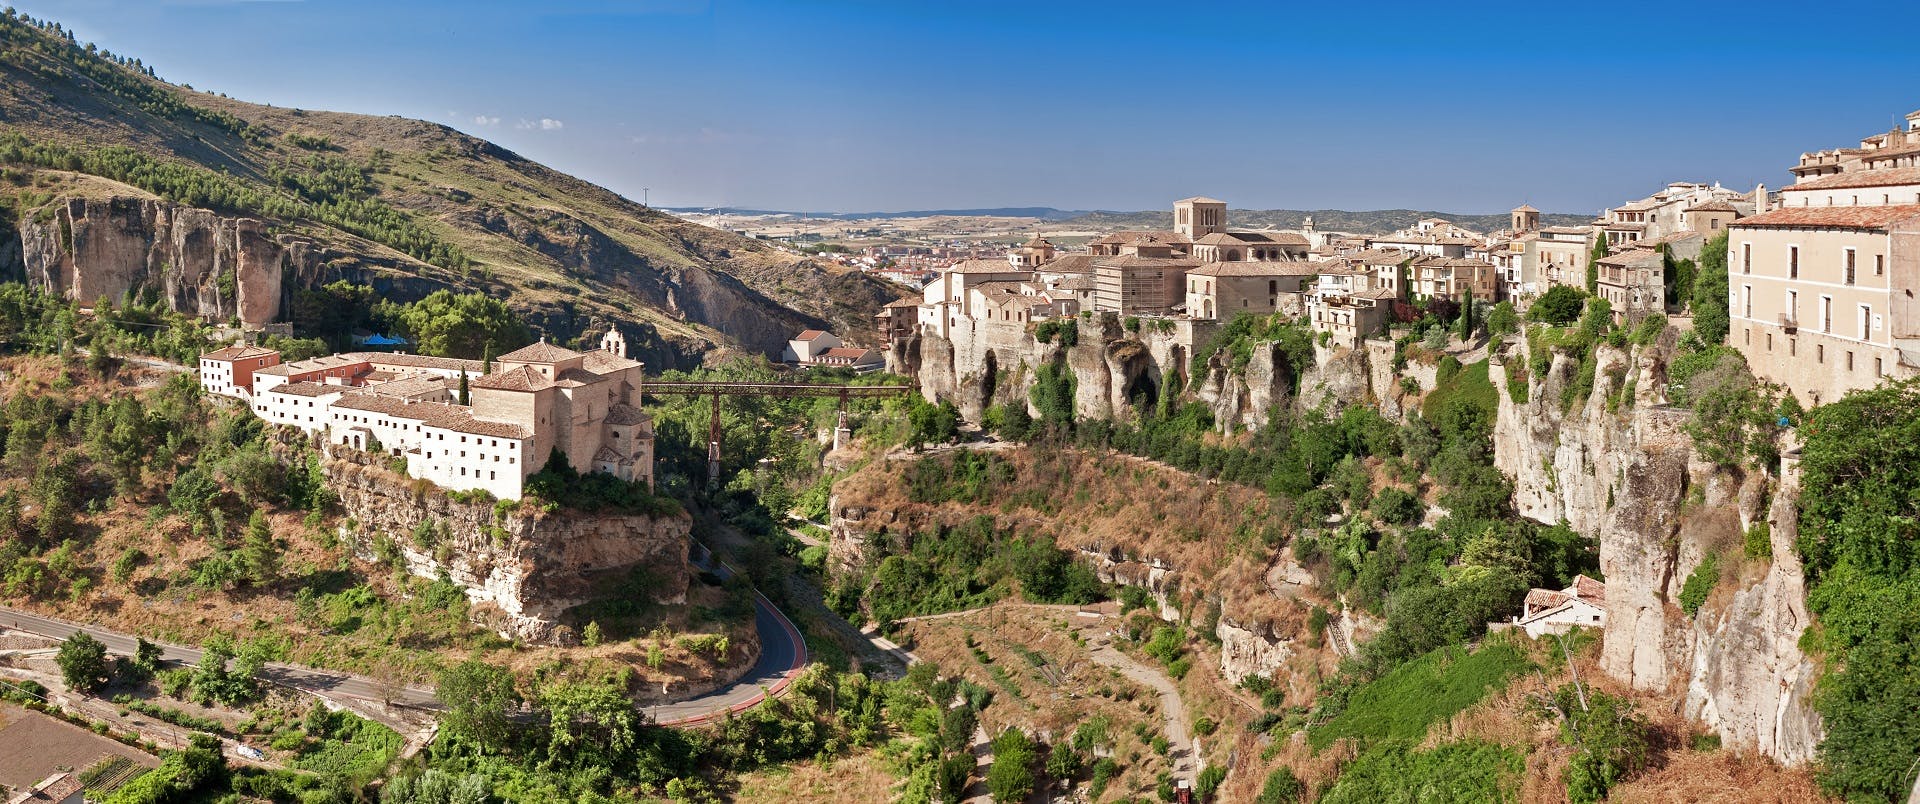 Cuencas Natur- und Stadtrundfahrt ab Madrid